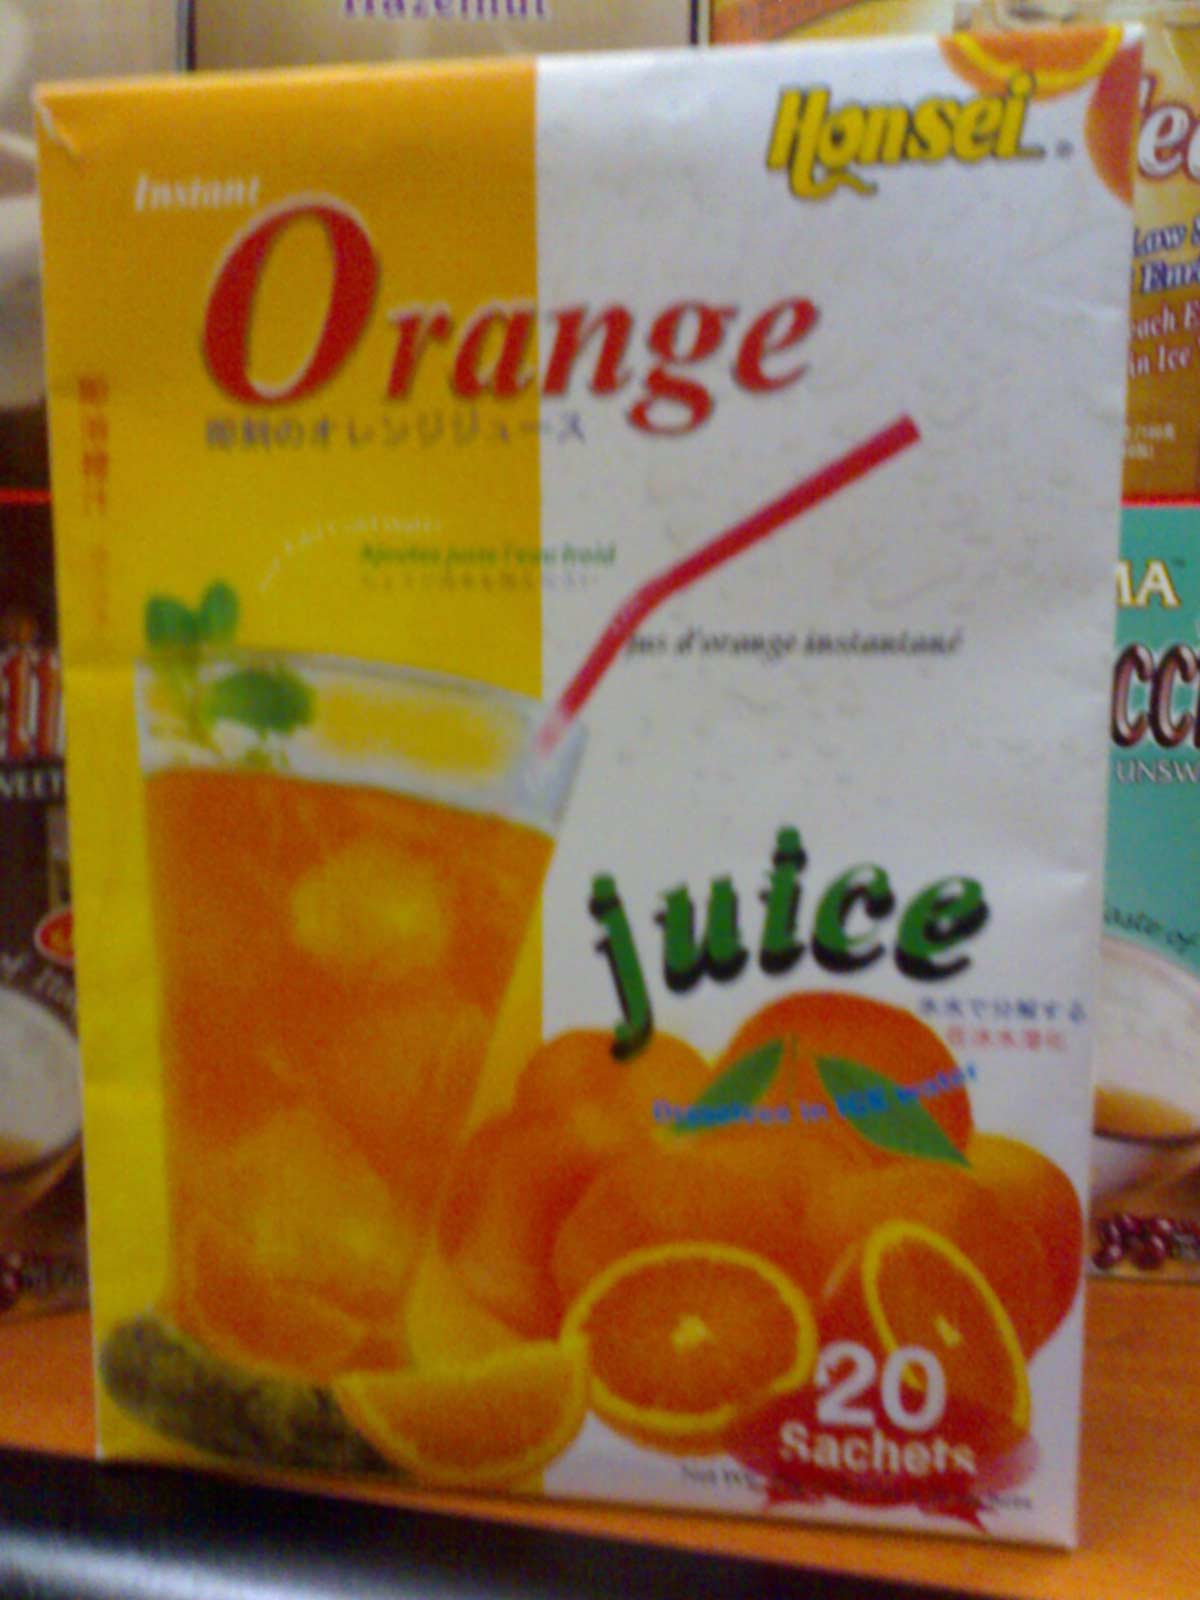  Honsei Orange & Mango Powder Drink (Honsei Orange & Mango Pulver Drink)